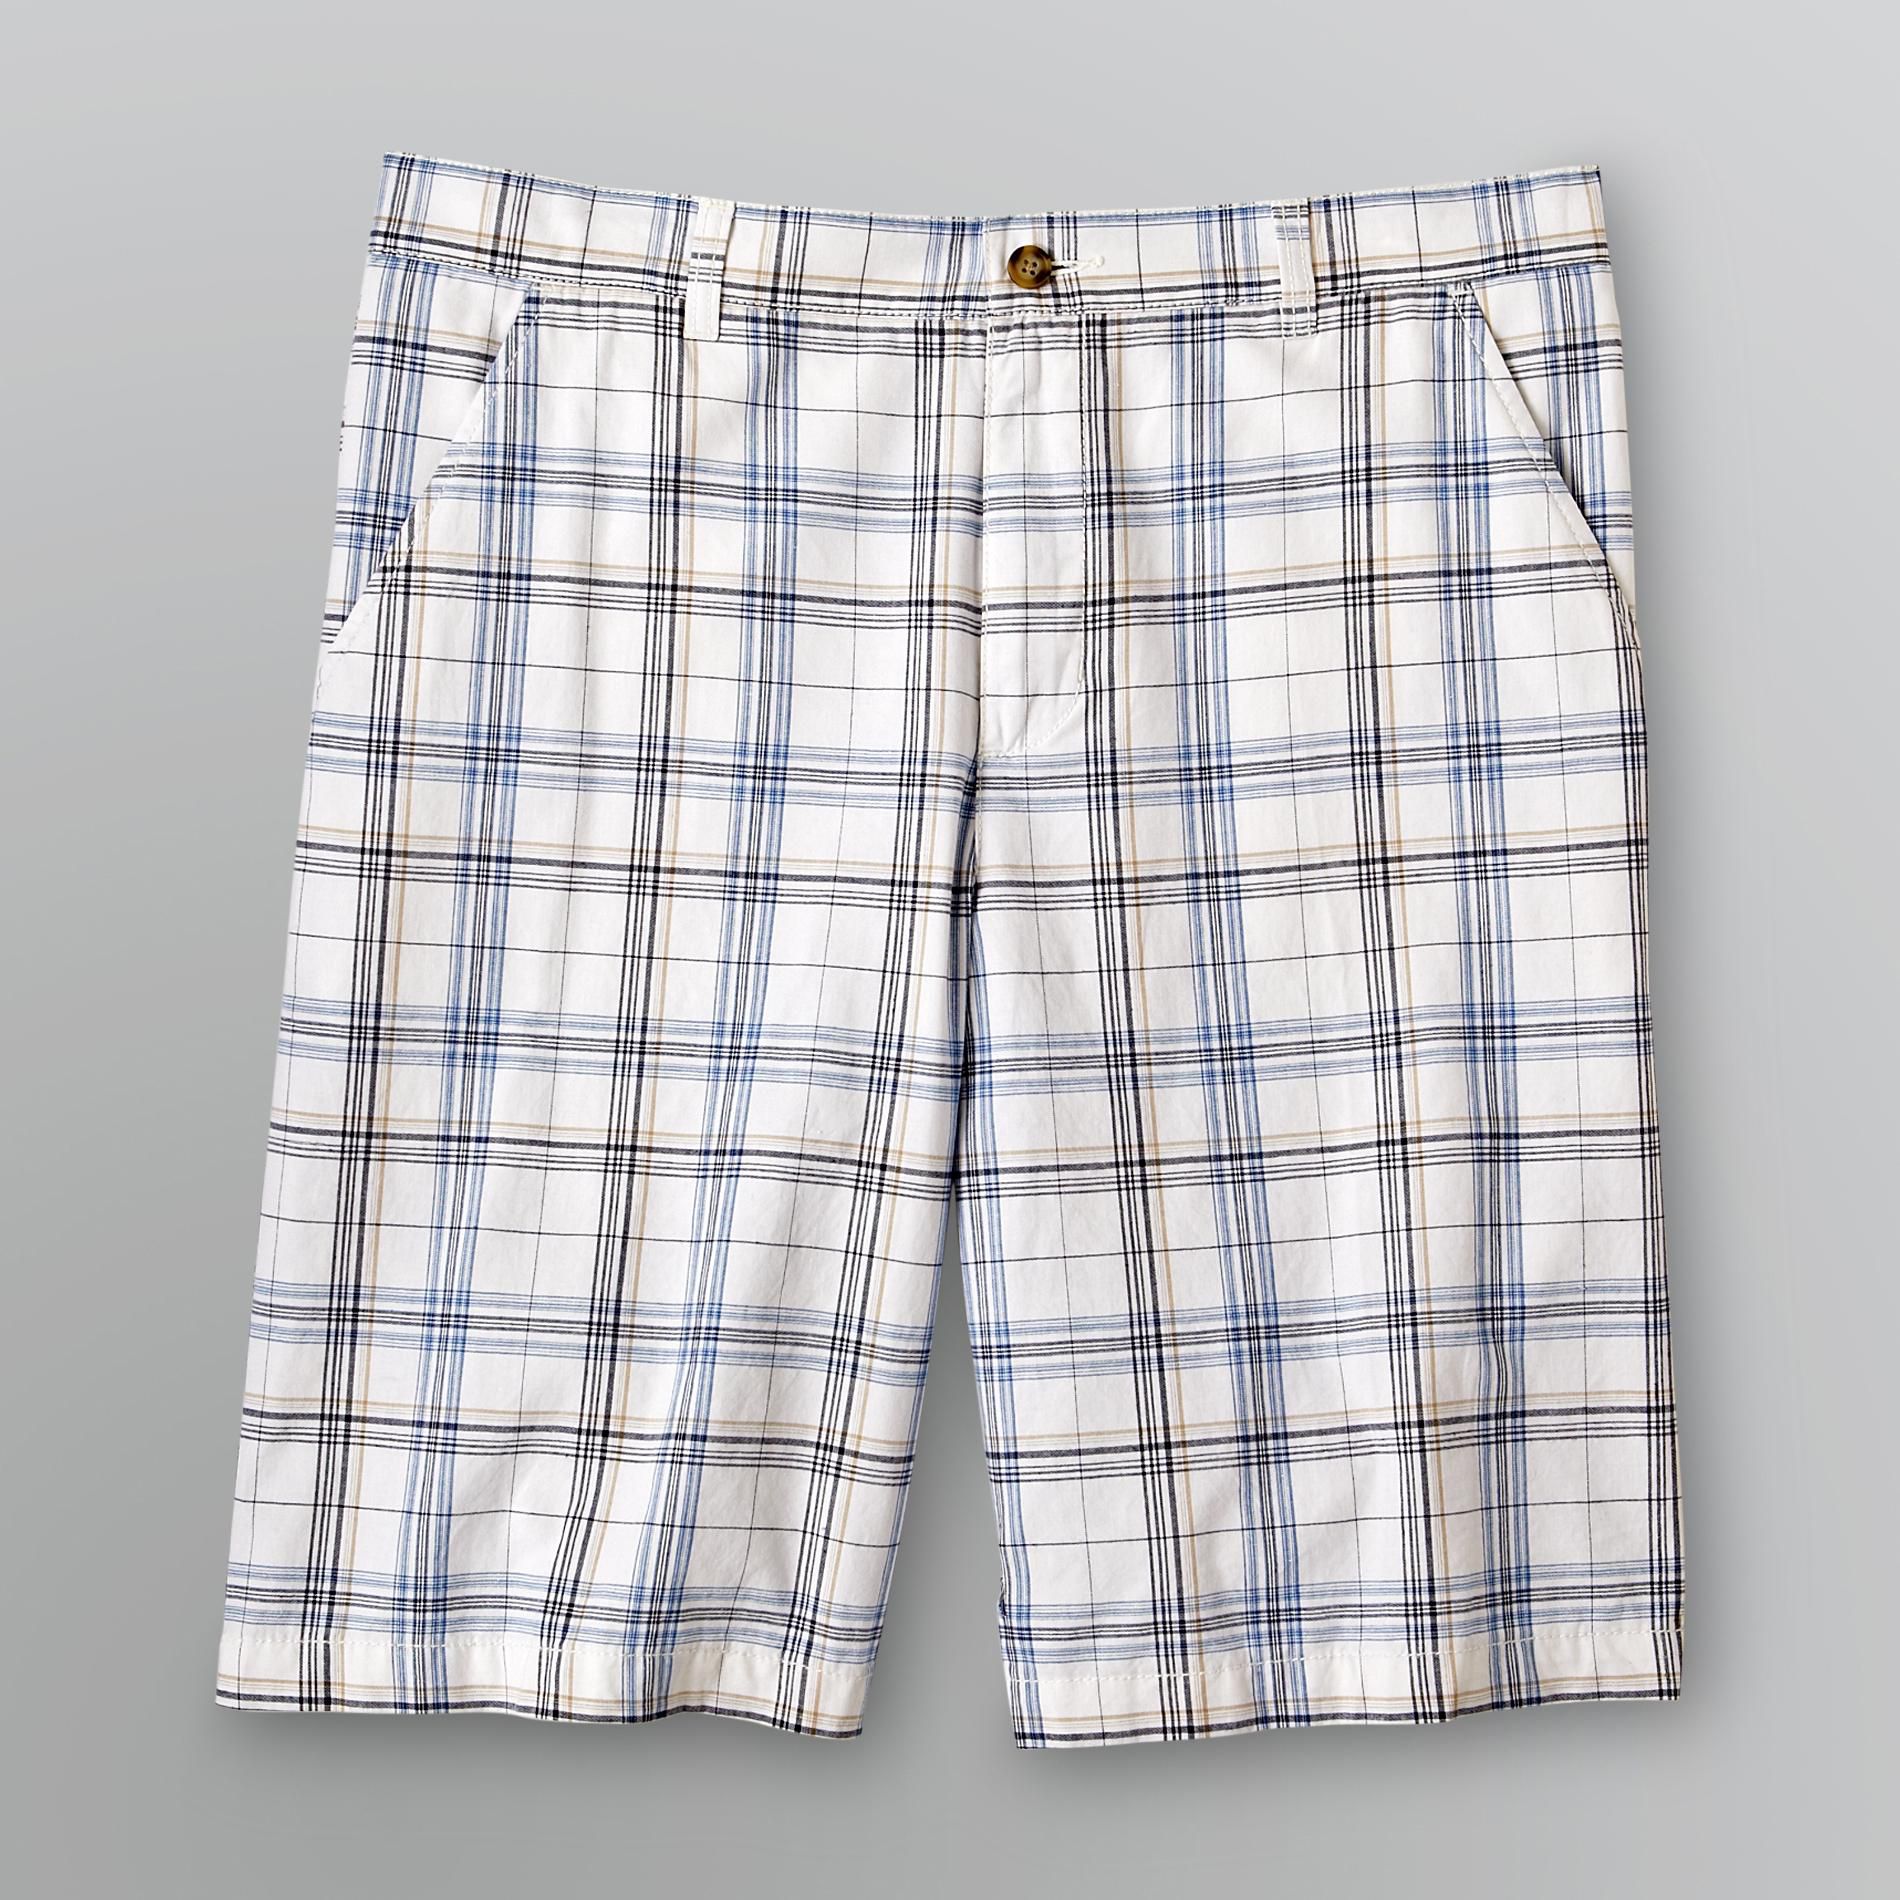 Covington Men's Woven Plaid Shorts